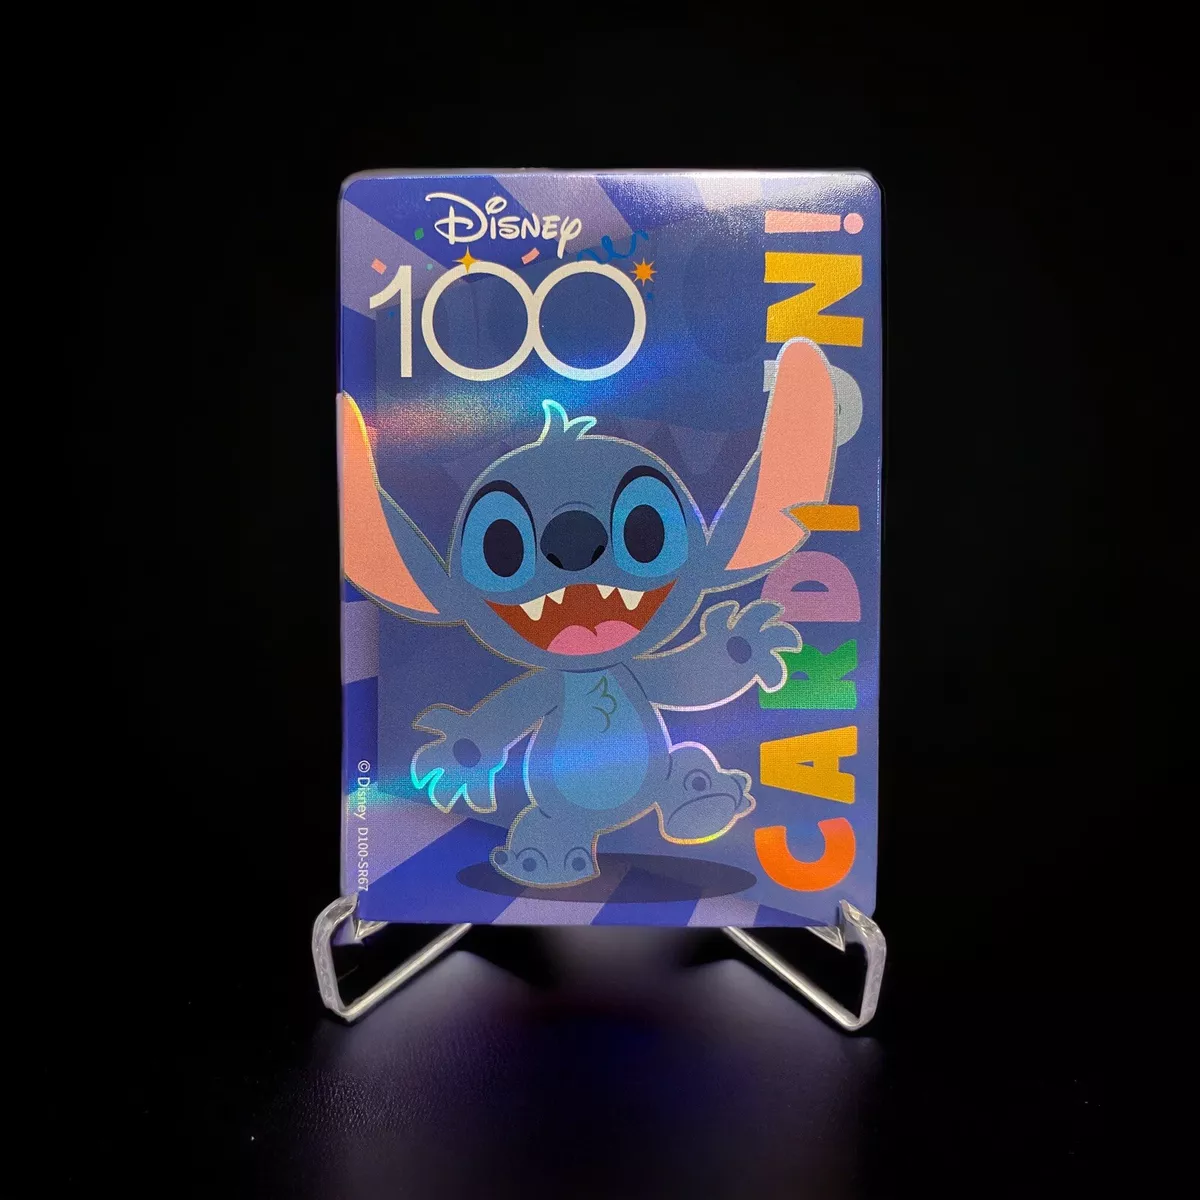 Stitch Disney100 Celebration Pin, Lilo & Stitch